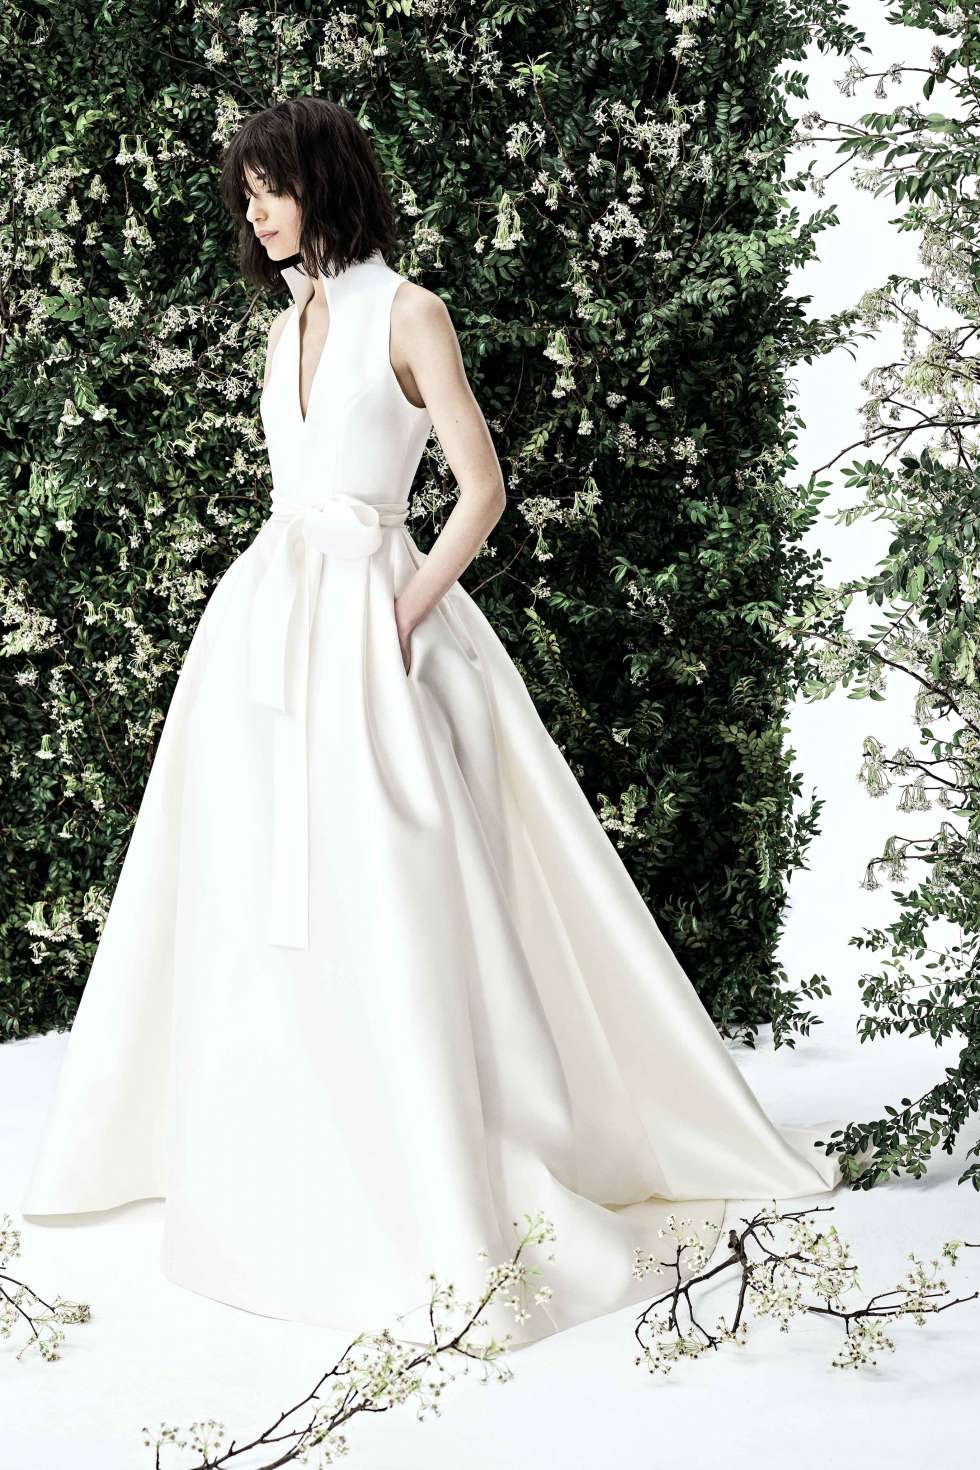 مجموعة كارولينا هيريرا لفساتين زفاف 2020